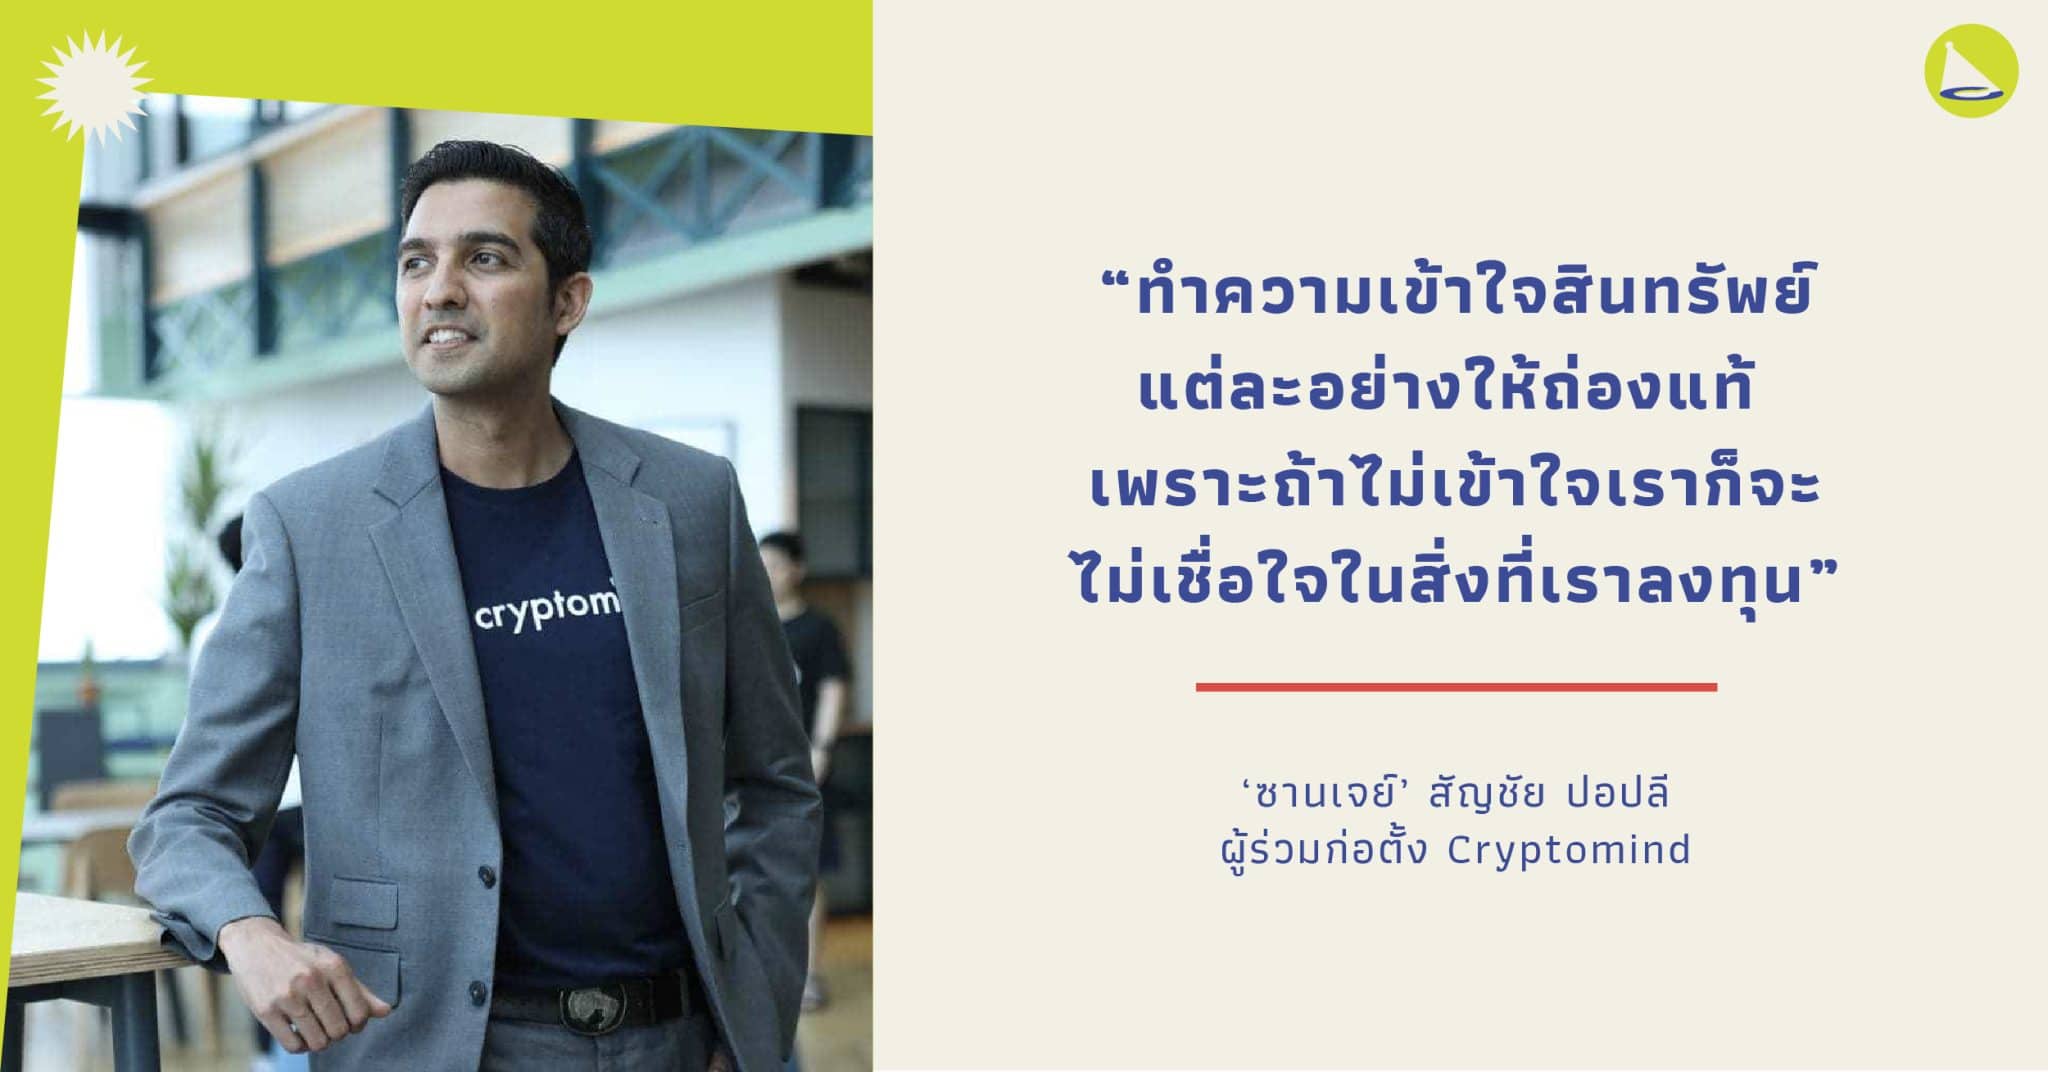 สัญชัย ปอปลี CEO Cryptomind ผู้บุกเบิกวงการสกุลเงินดิจิทัลของเมืองไทย